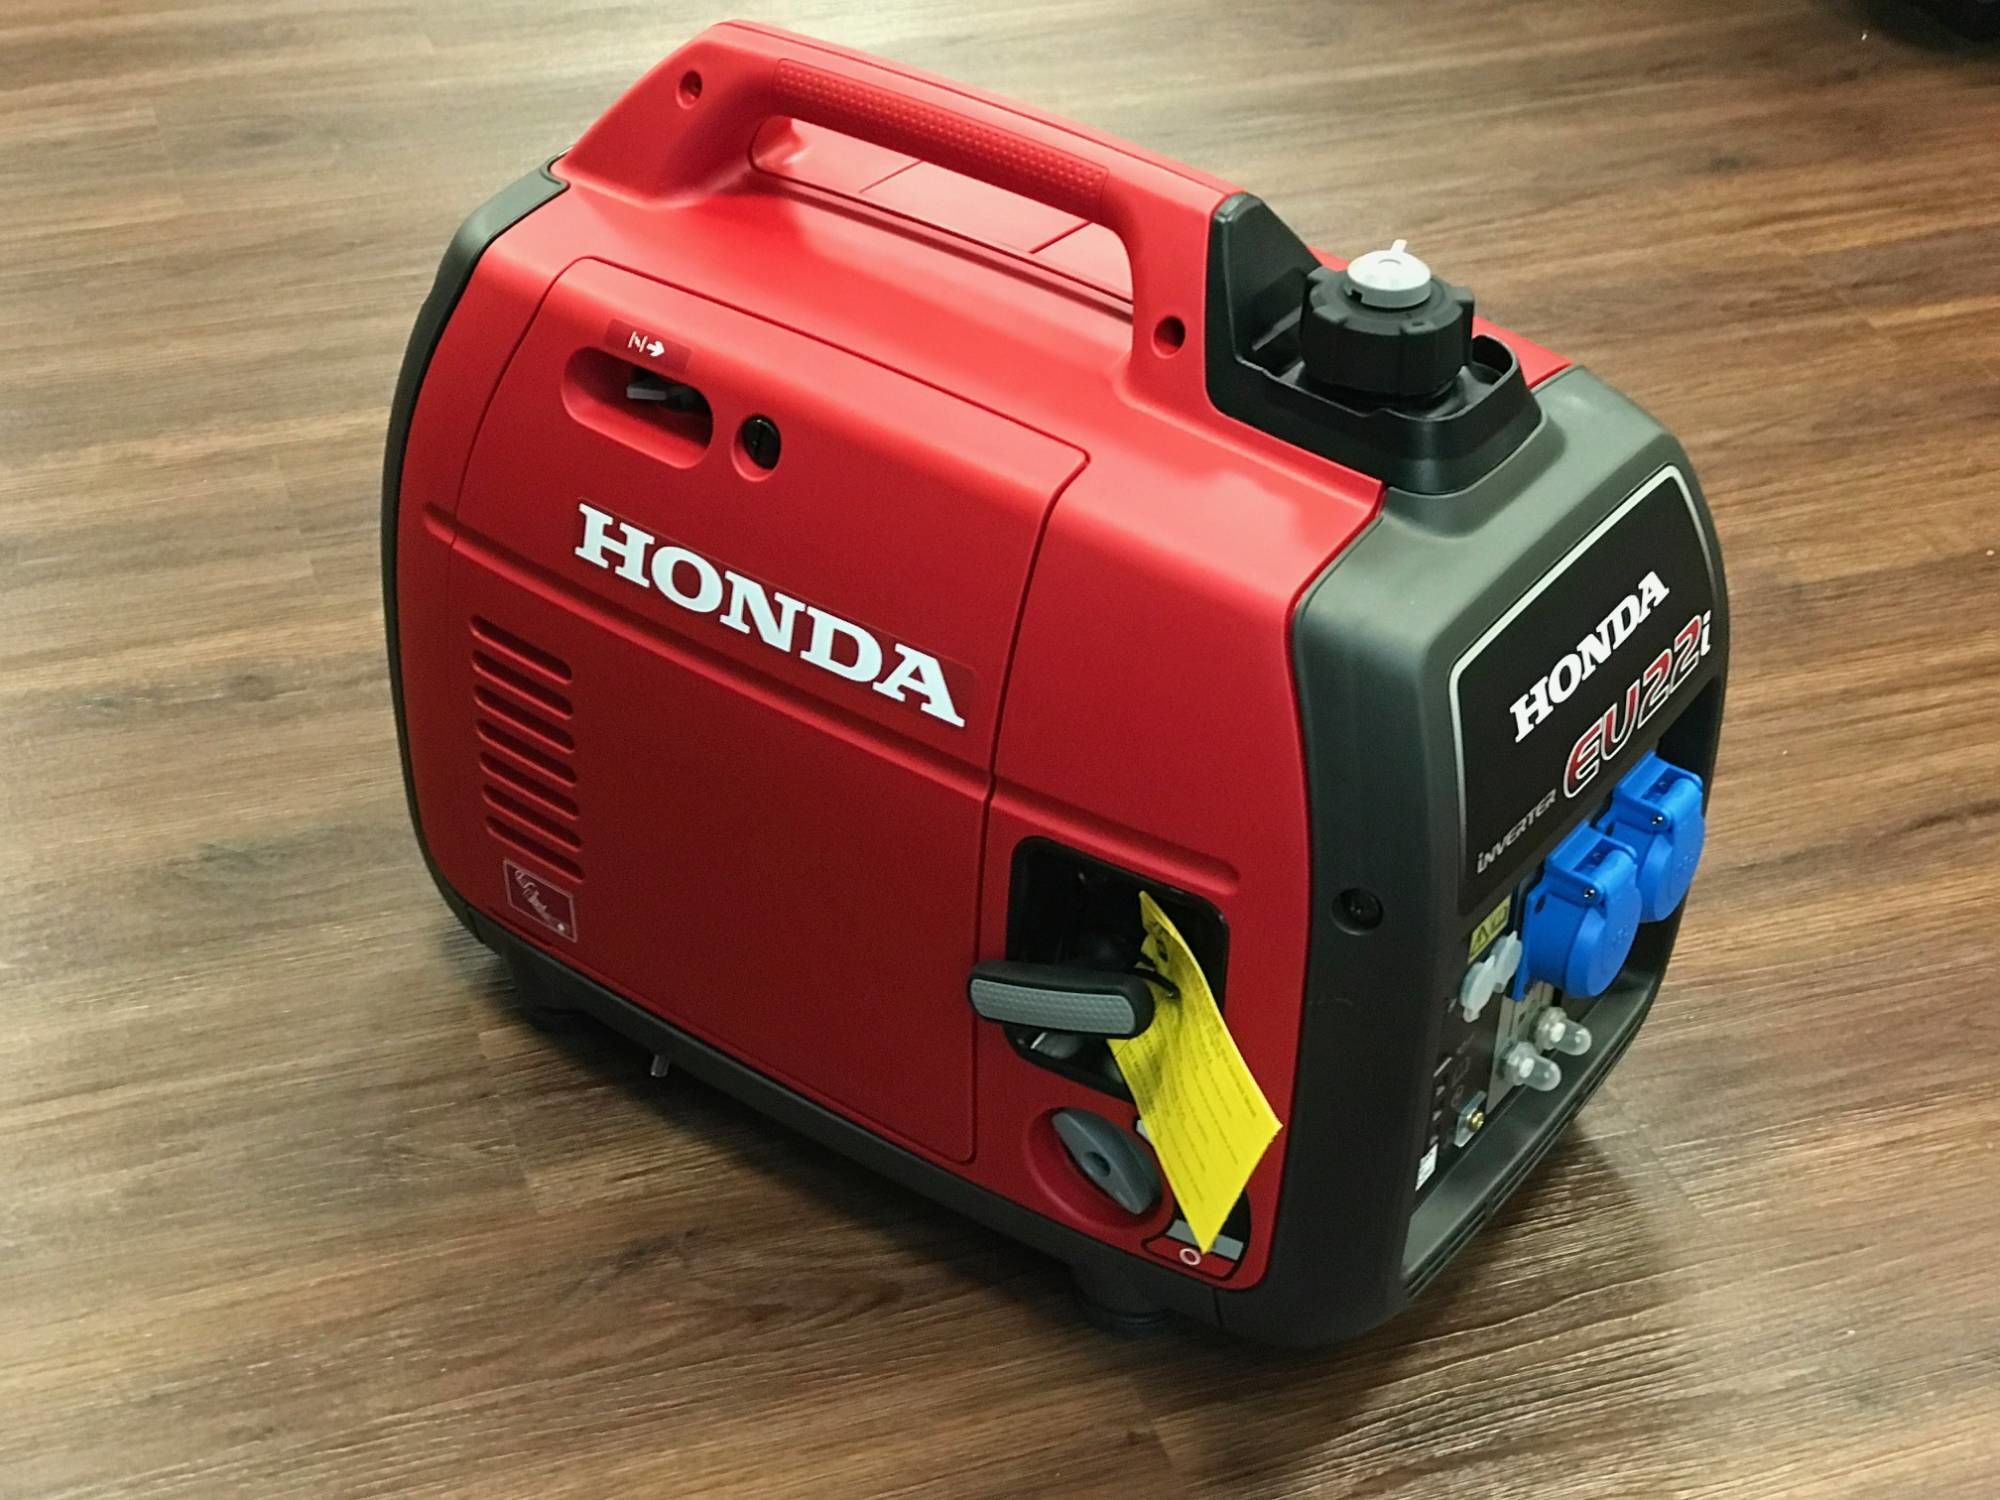 https://www.marine-sales.de/images/upload/Generatoren/Honda-Generatoren/honda-eu-22i-generator-auf-propangas-02.JPG